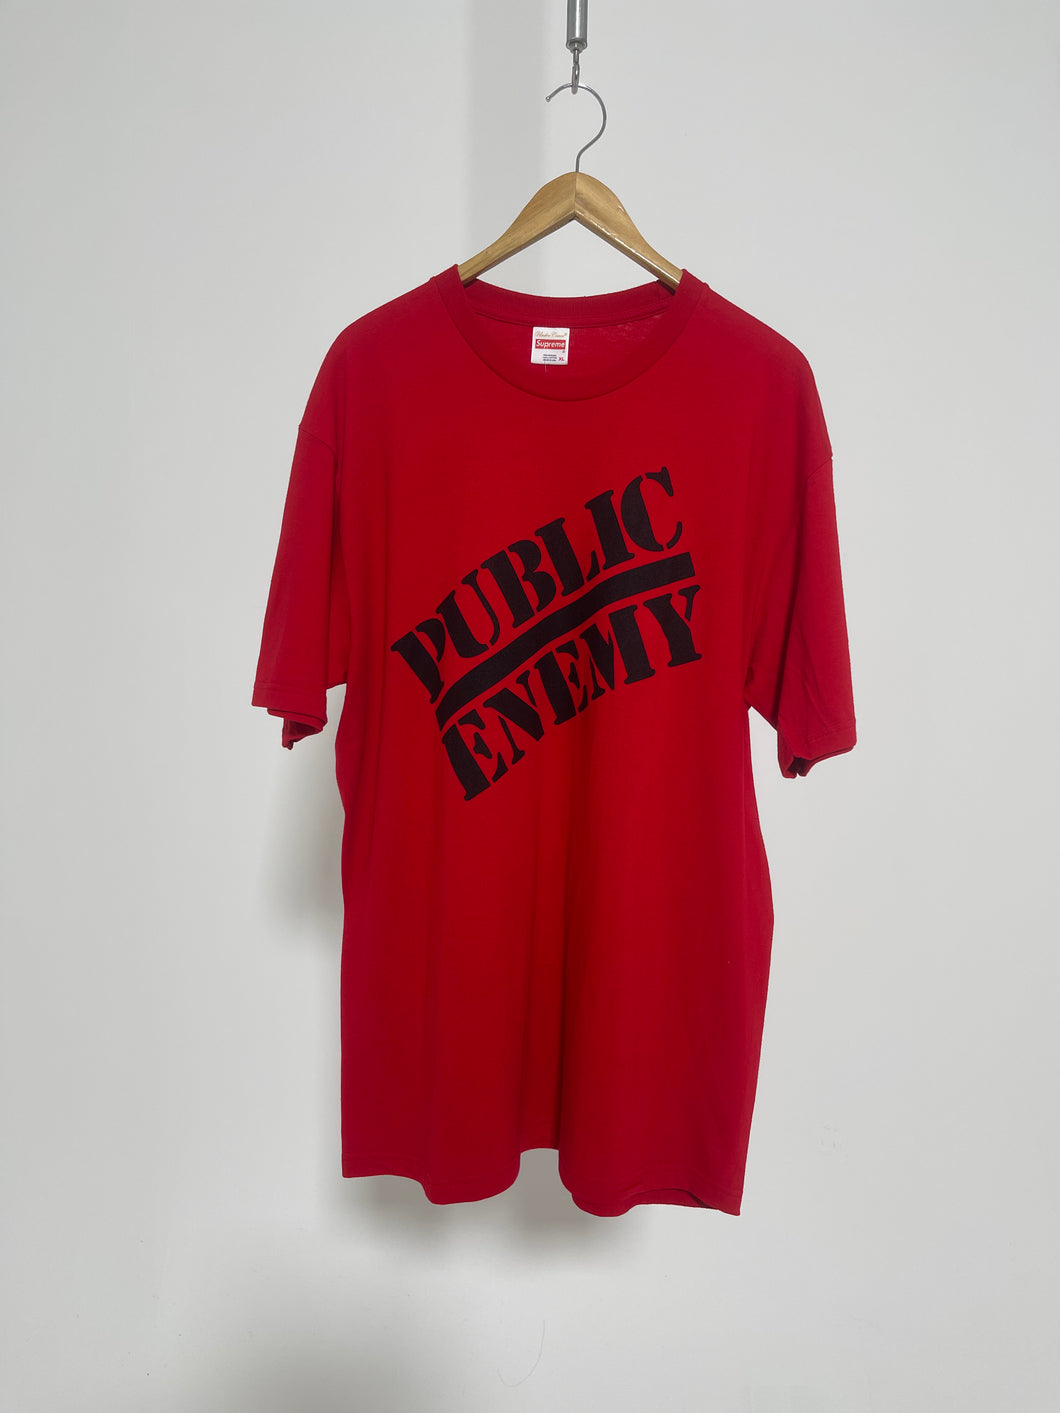 Undercover Supreme Public Enemy Blow Your Mind T-Shirt